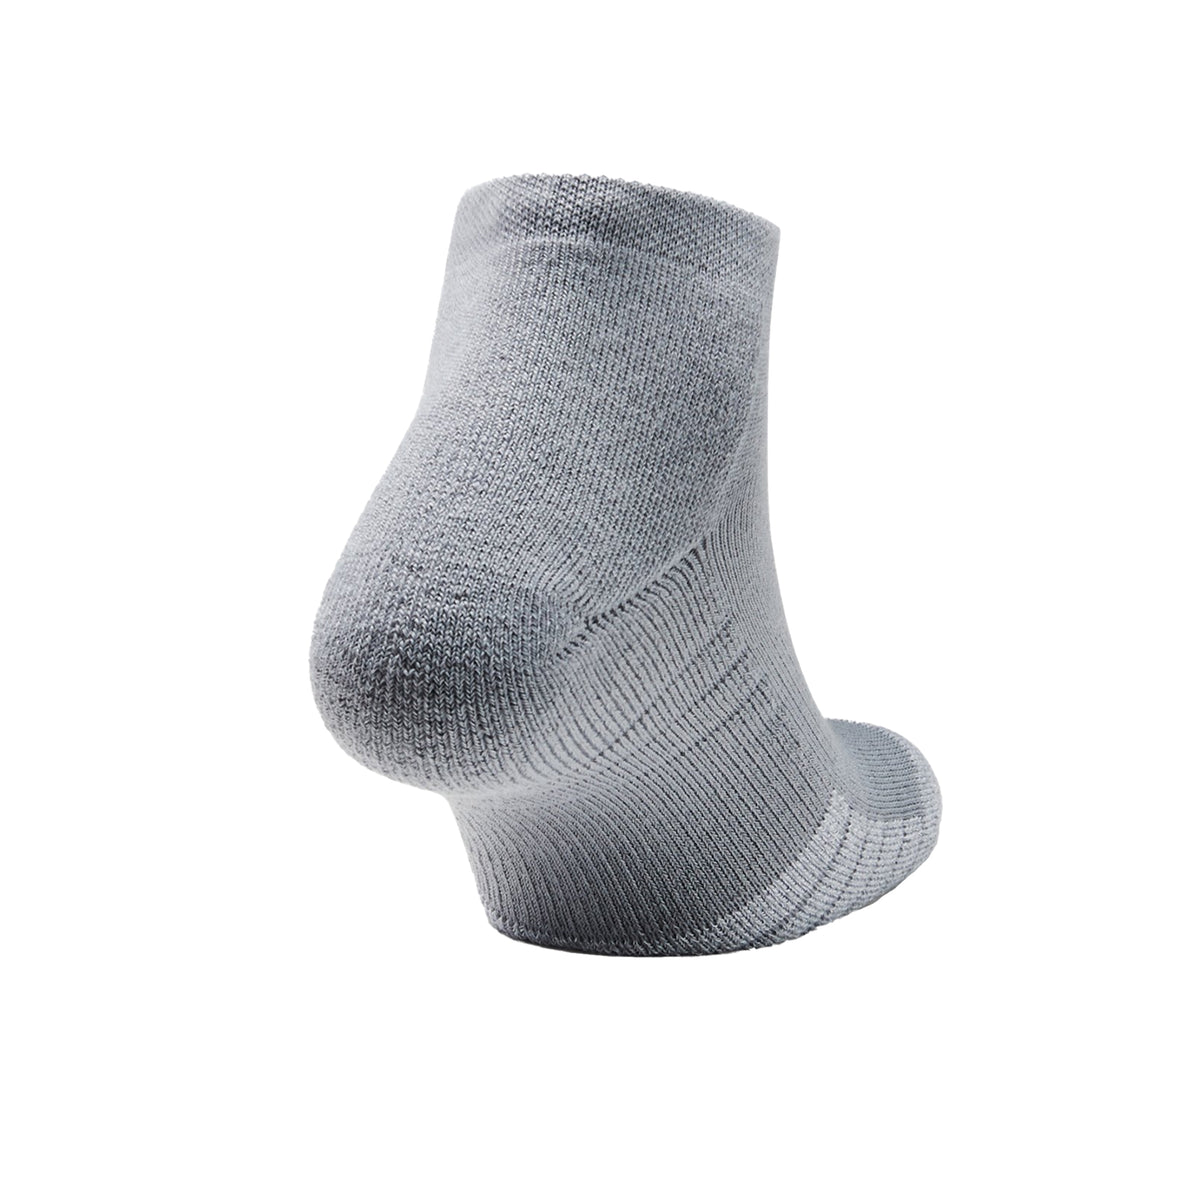 Under Armour Lo Cut Socks: Grey